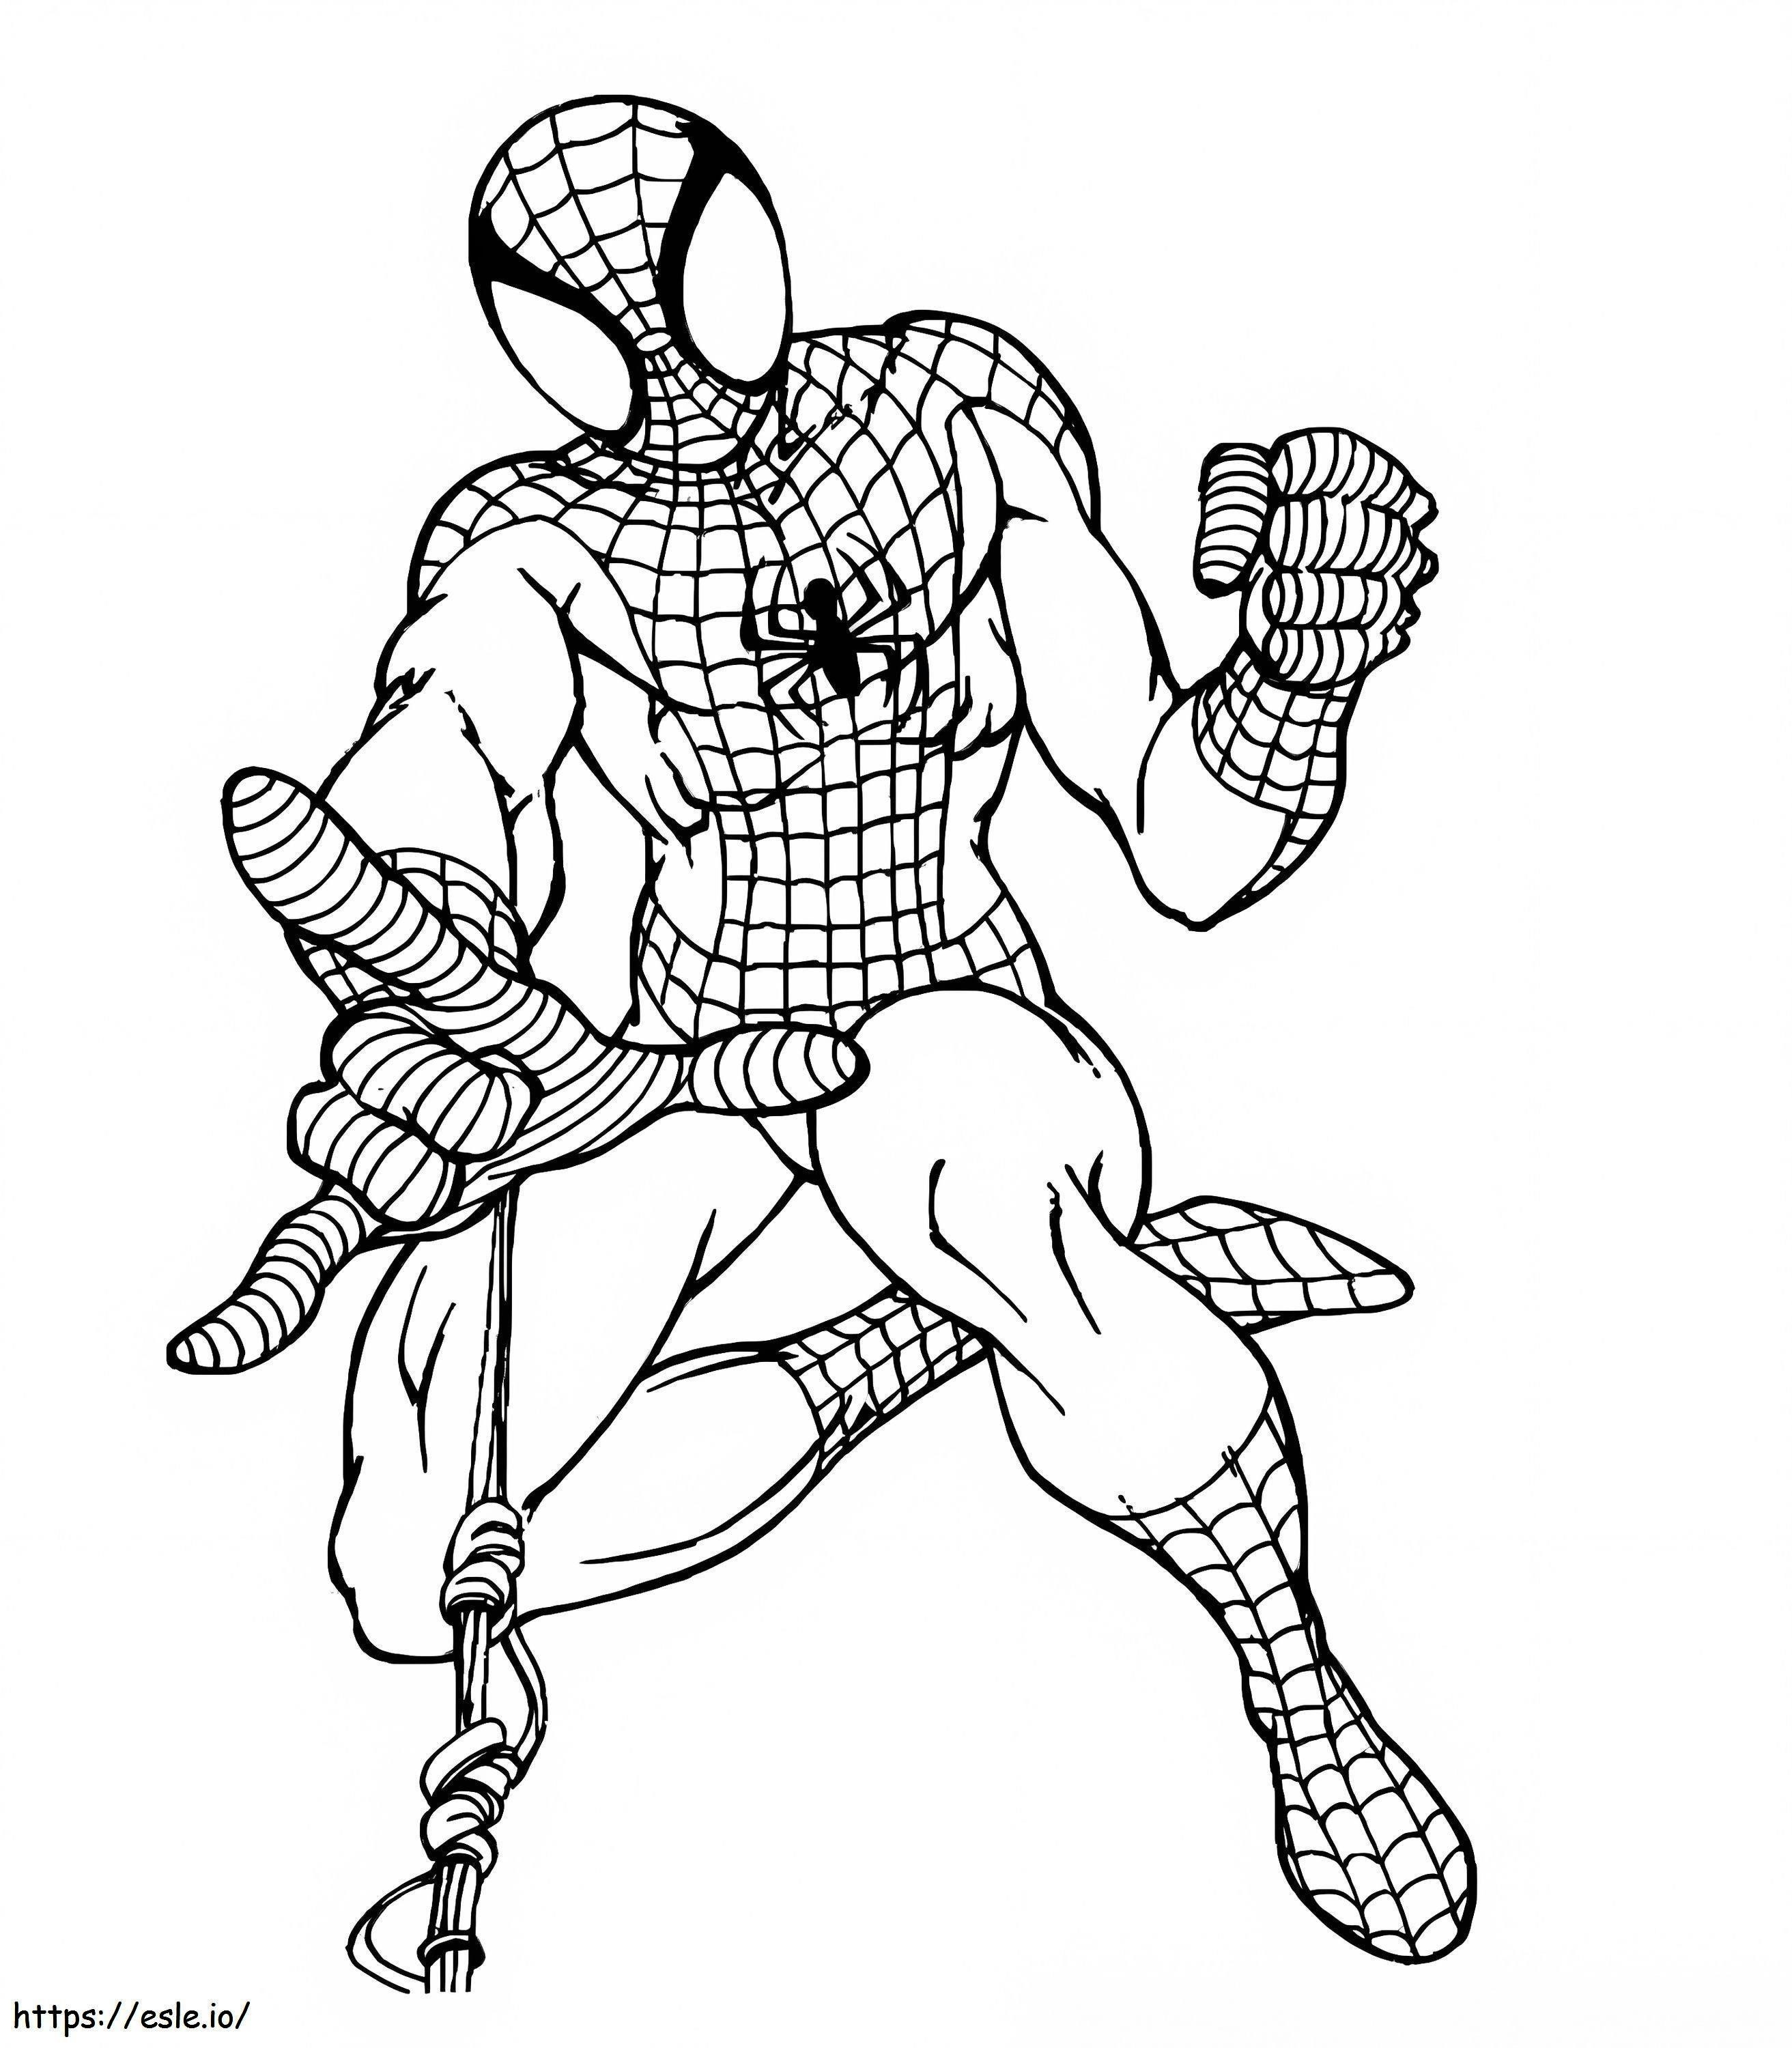 Semplice disegno di Spider Man da colorare